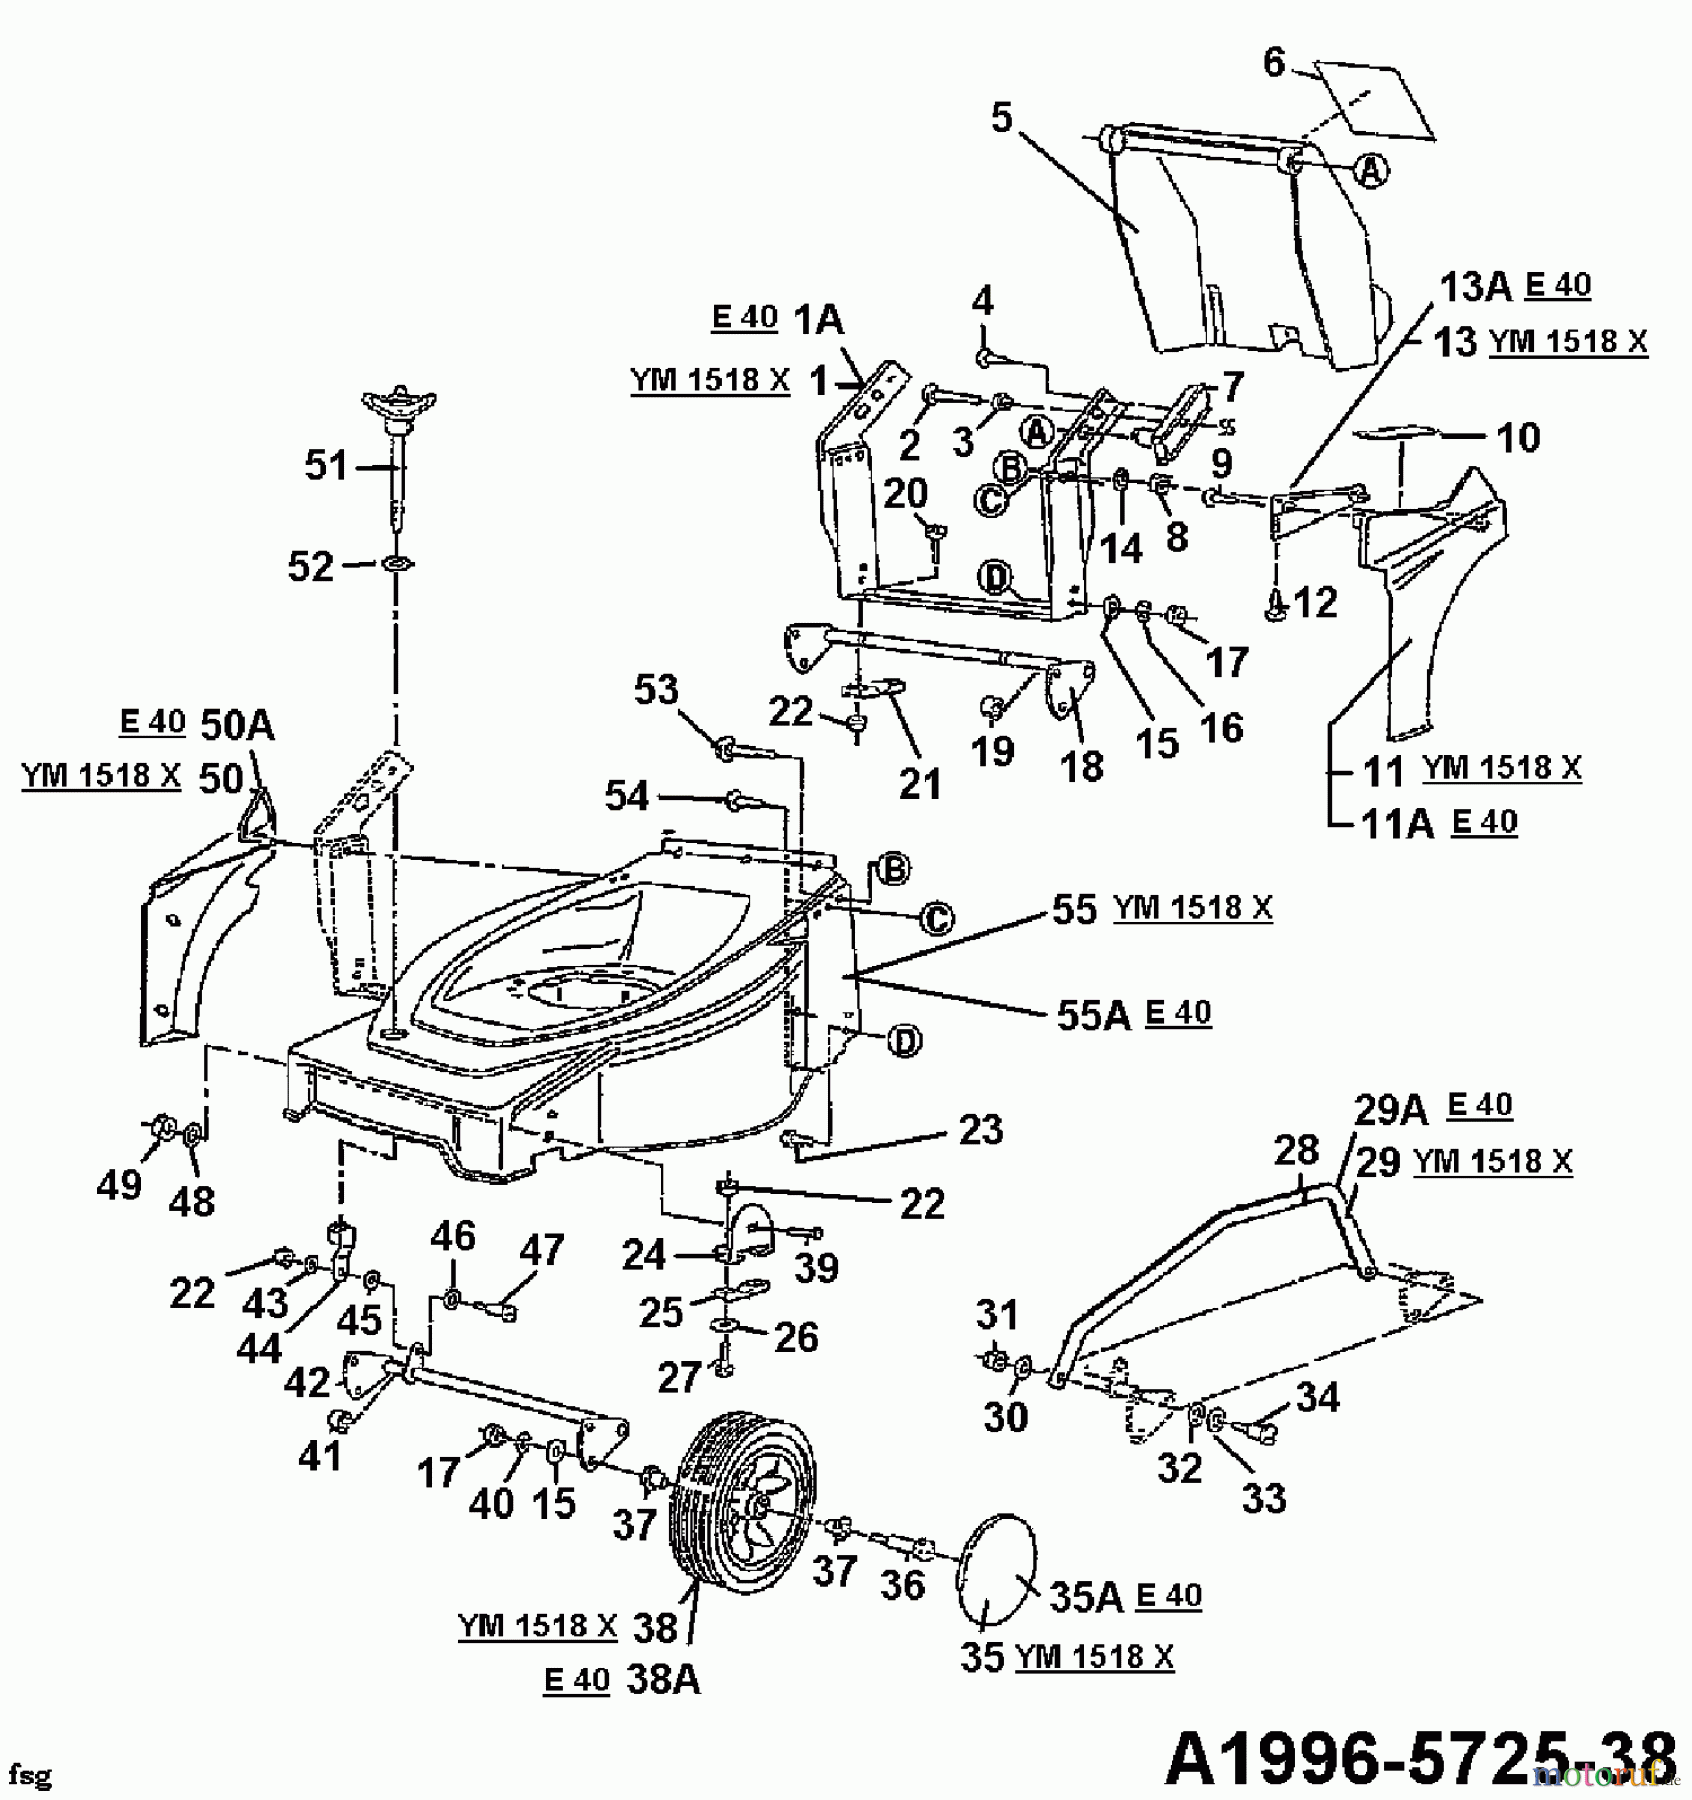  MTD Elektromäher E 40 04030.04  (1996) Räder vorne, Schnitthöhenverstellung